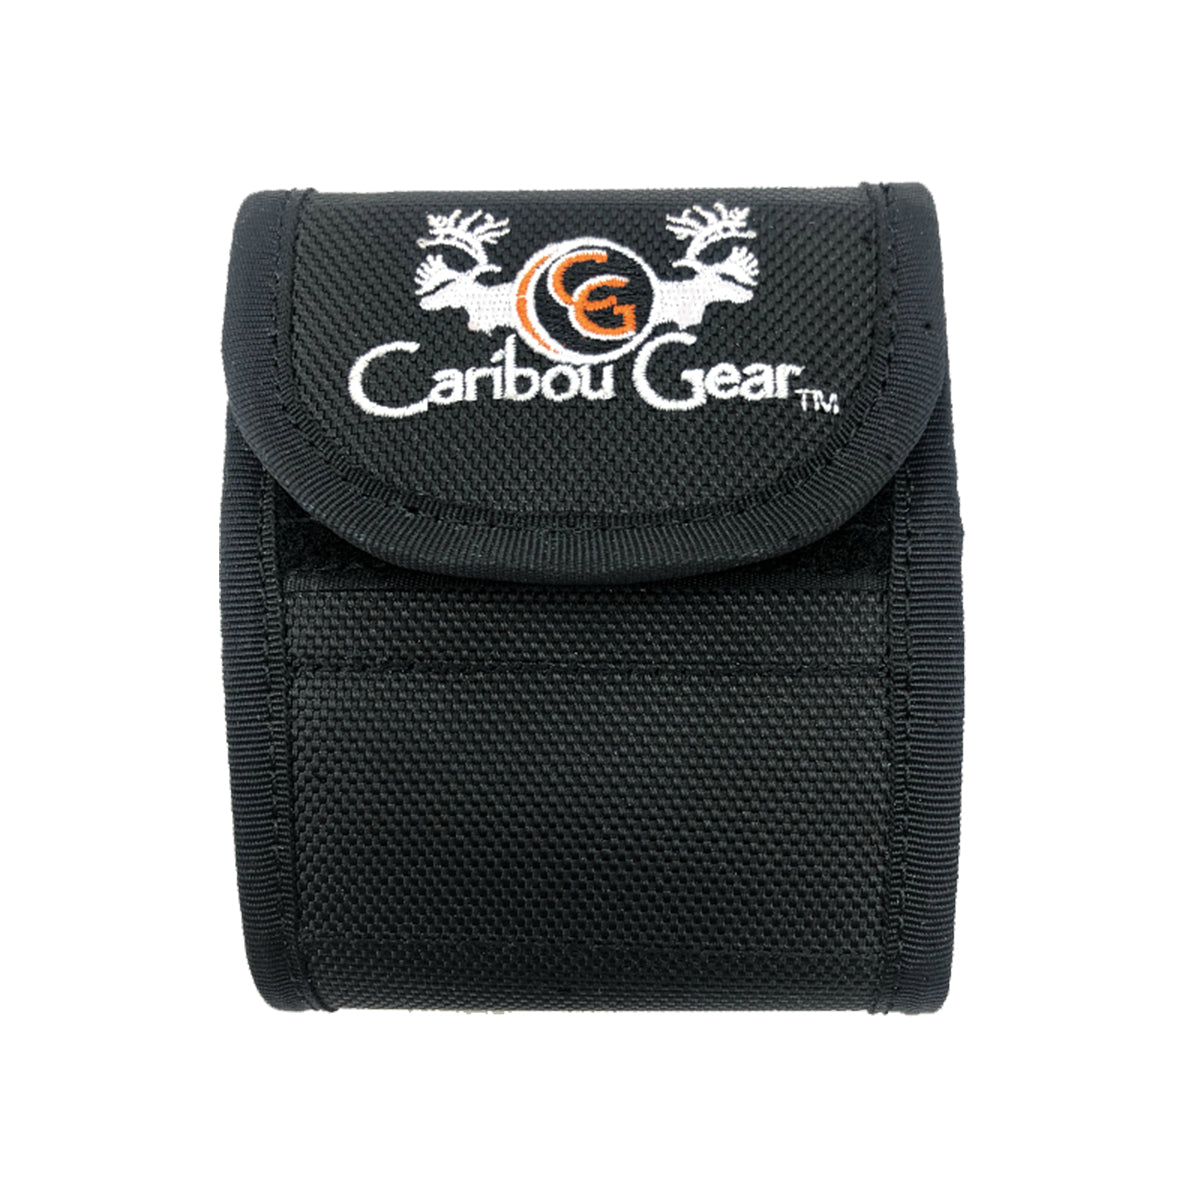 Caribou Gear 10 Bullet Wallet in Caribou Gear 10 Bullet Wallet by Caribou Gear | Gear - goHUNT Shop by GOHUNT | Caribou Gear - GOHUNT Shop